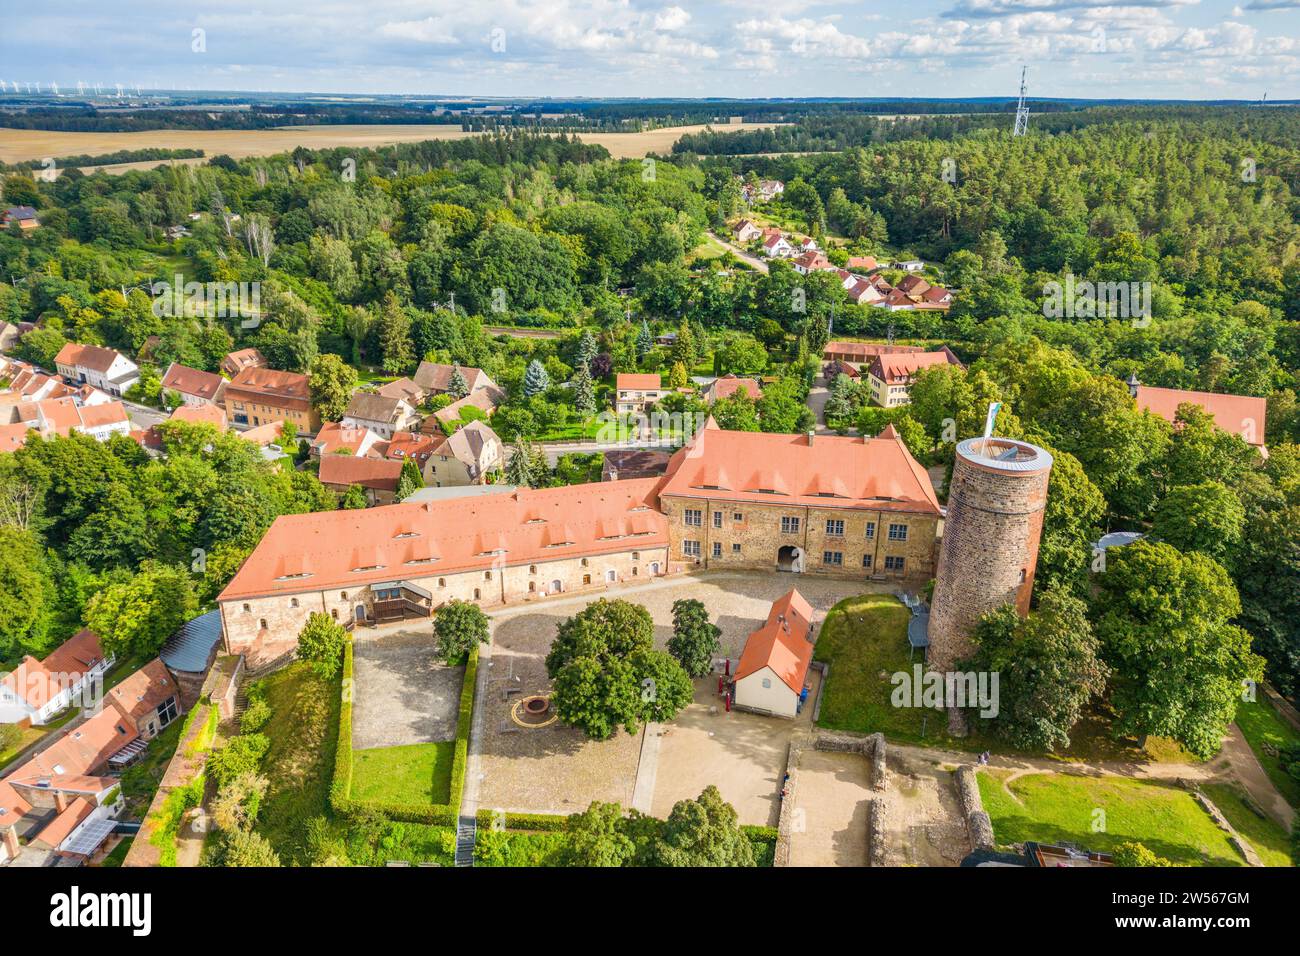 Vue aérienne, photo drone : Château Eisenhardt et ville thermale de Bad Belzig, parc naturel Hoher Flaeming, Brandebourg, Allemagne Banque D'Images